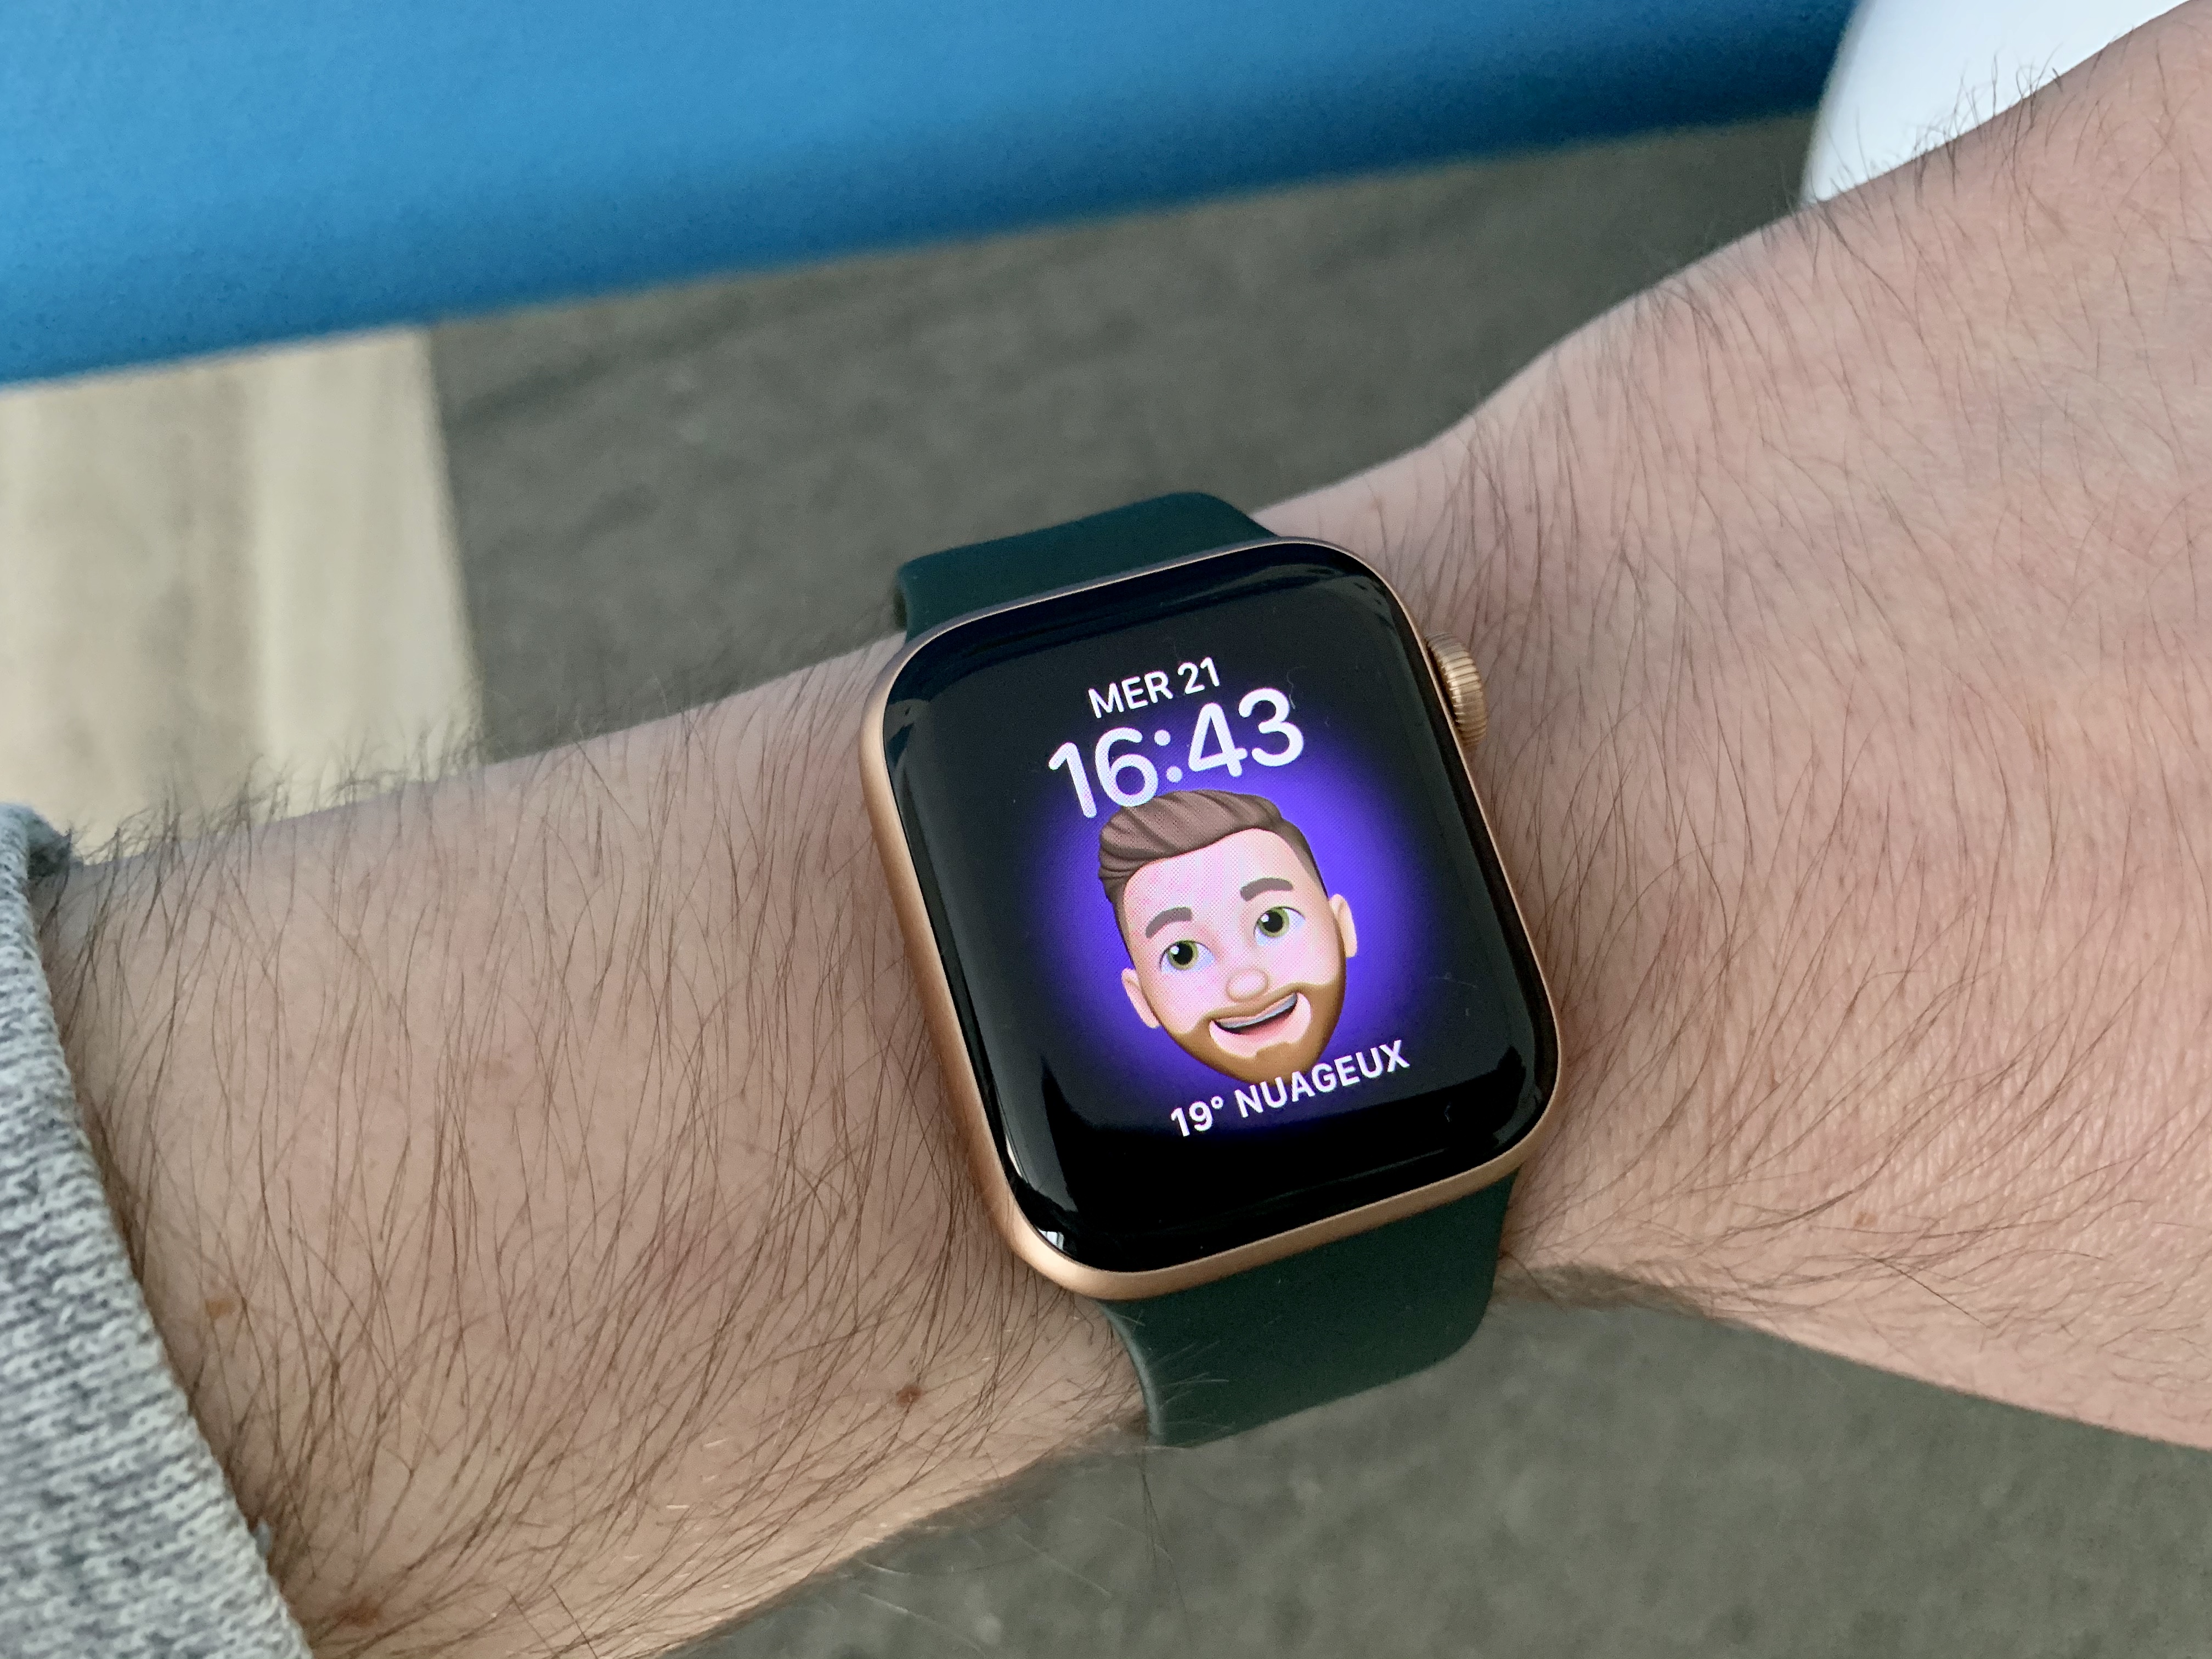 100 millions de personnes utiliseraient une Apple Watch de manière régulière